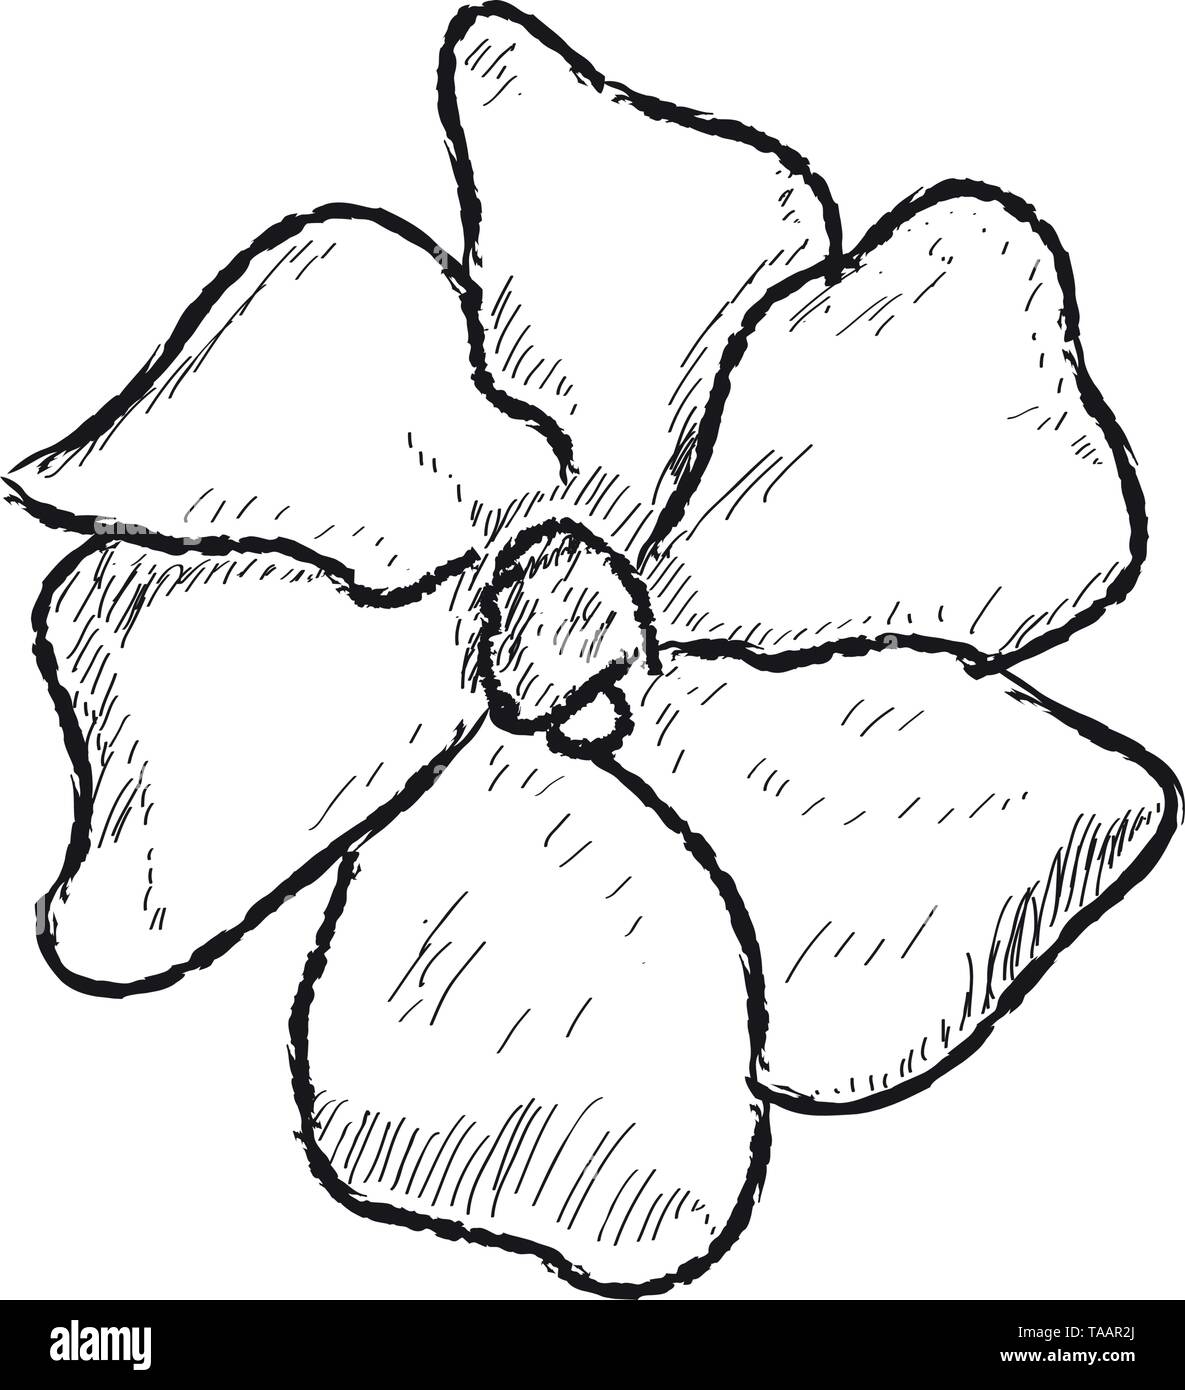 Isolierten Skizze einer Blume auf weißem Hintergrund Stock Vektor